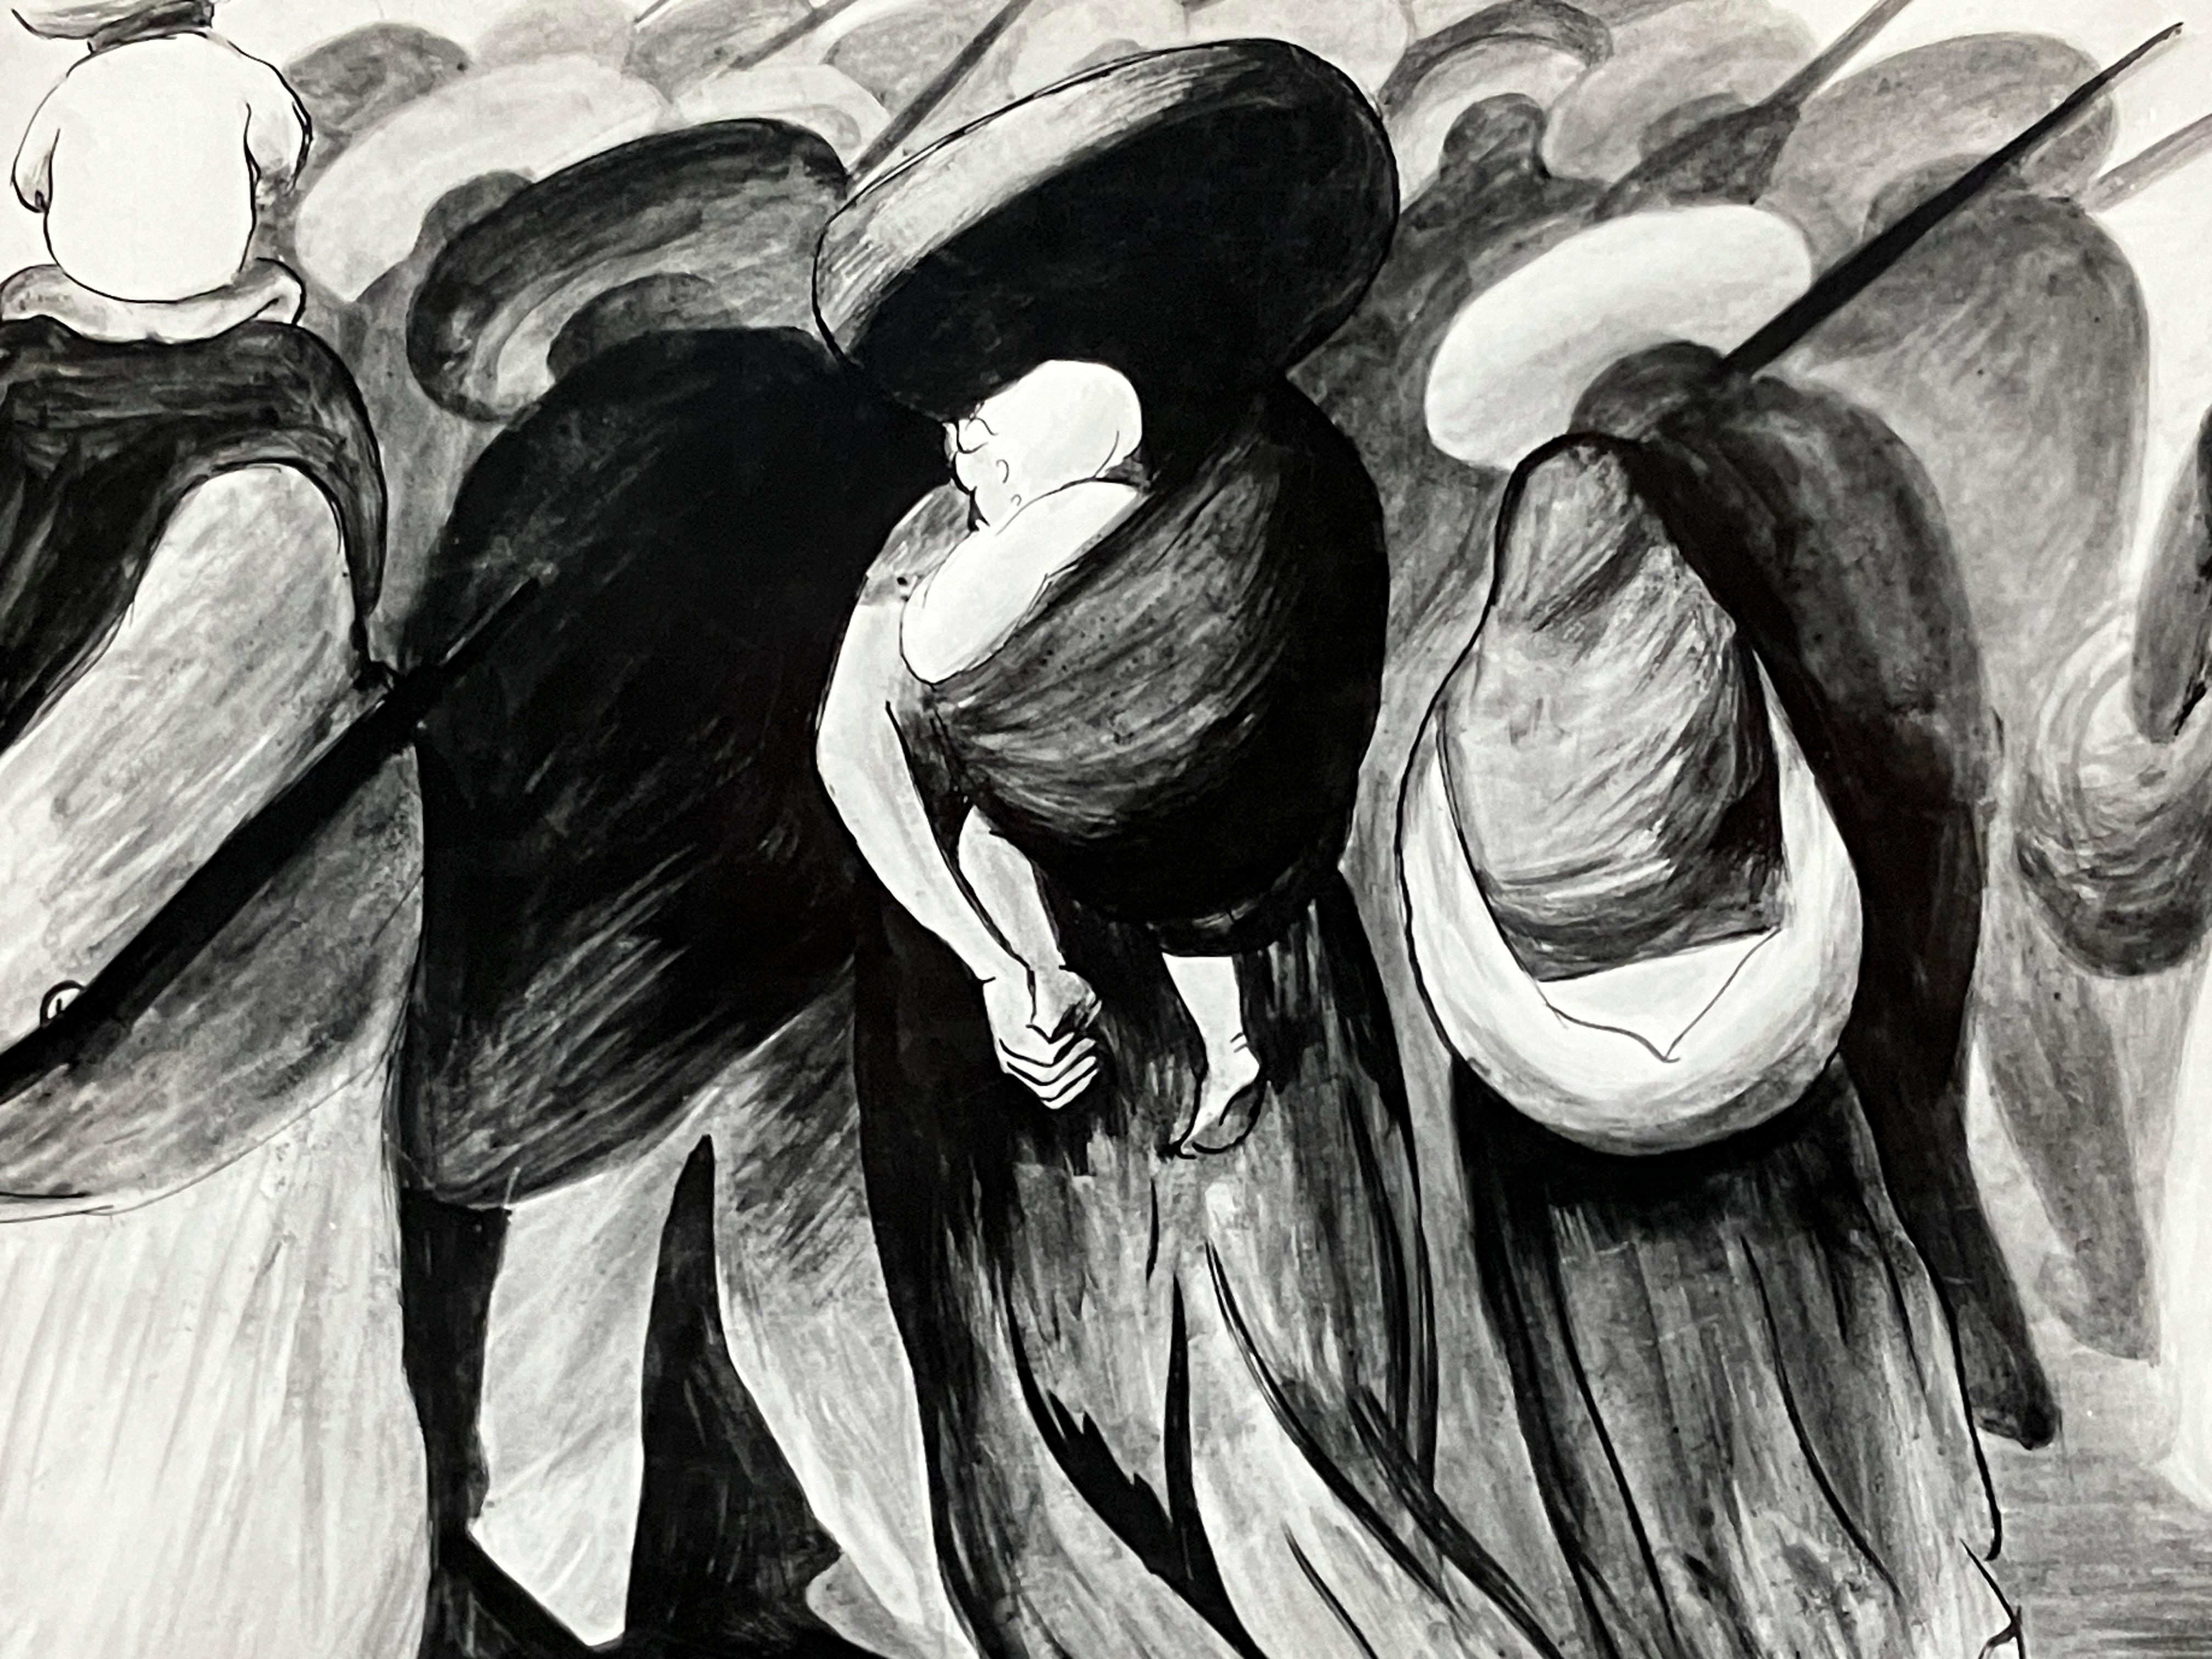 Ein Original-Silbergelatineabzug der Fotografin Tina Modotti aus den 1920er Jahren, der eine Zeichnung von Soldaten und Familien von Clemente Orozco zeigt.  Das Foto ist auf der Rückseite mit dem Stempel "Photographs-Tina Modotti Mexico, D.F."